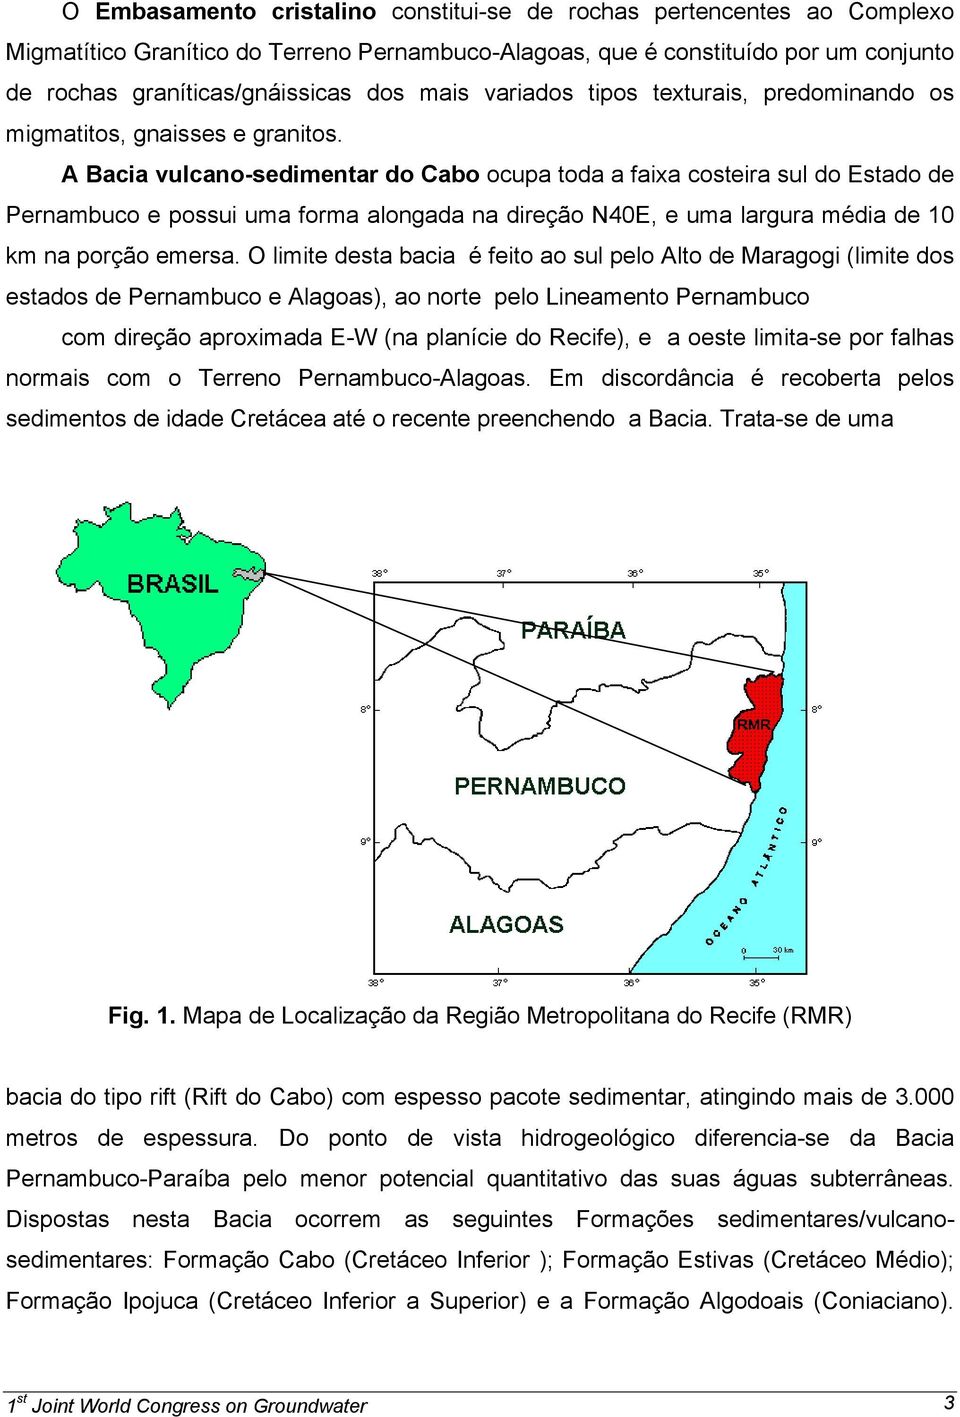 A Bacia vulcano-sedimentar do Cabo ocupa toda a faixa costeira sul do Estado de Pernambuco e possui uma forma alongada na direção N40E, e uma largura média de 10 km na porção emersa.